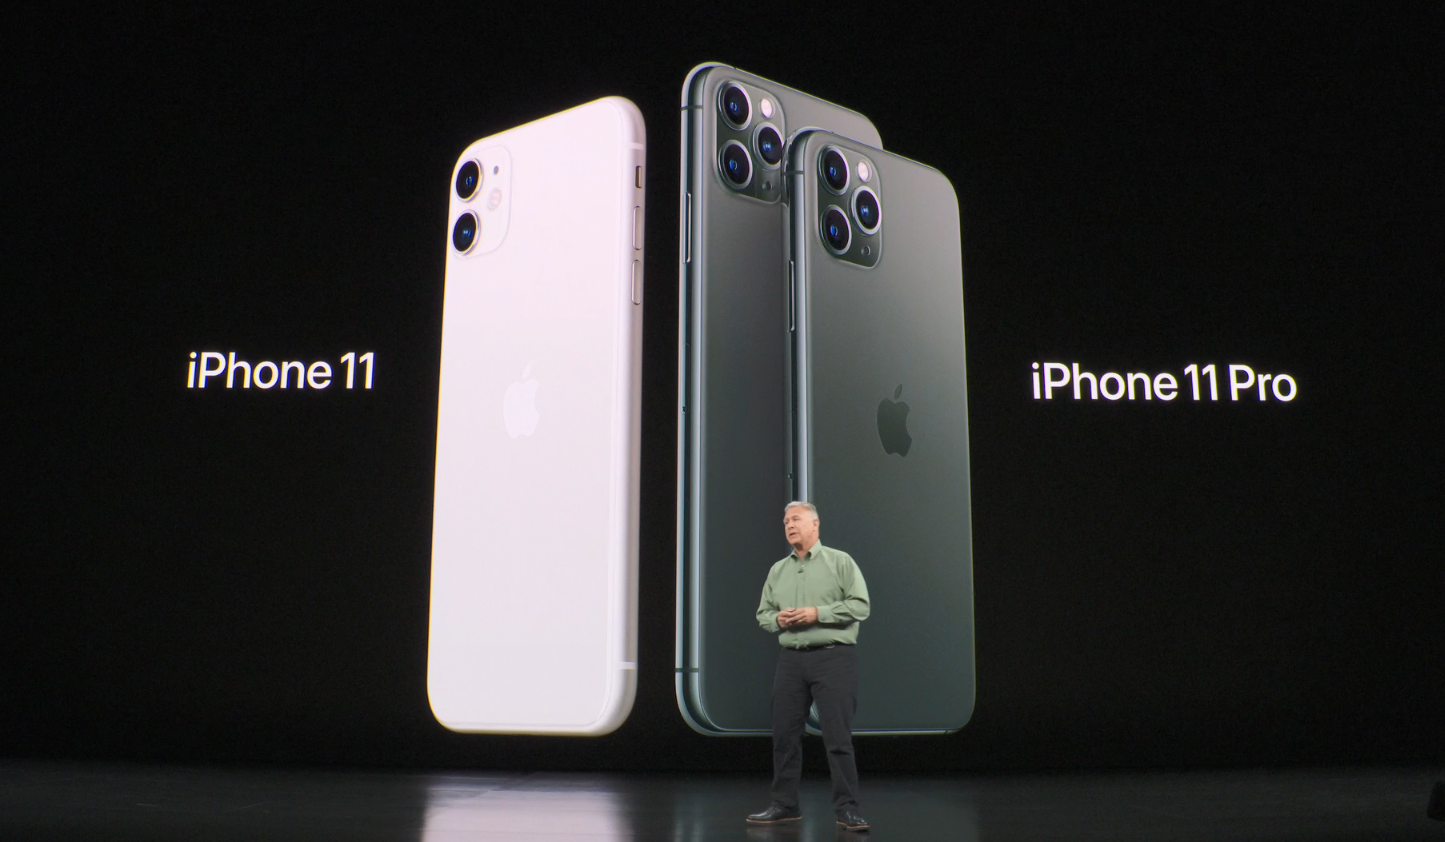  AppleiPhone 11 diluncurkan pada hari Selasa